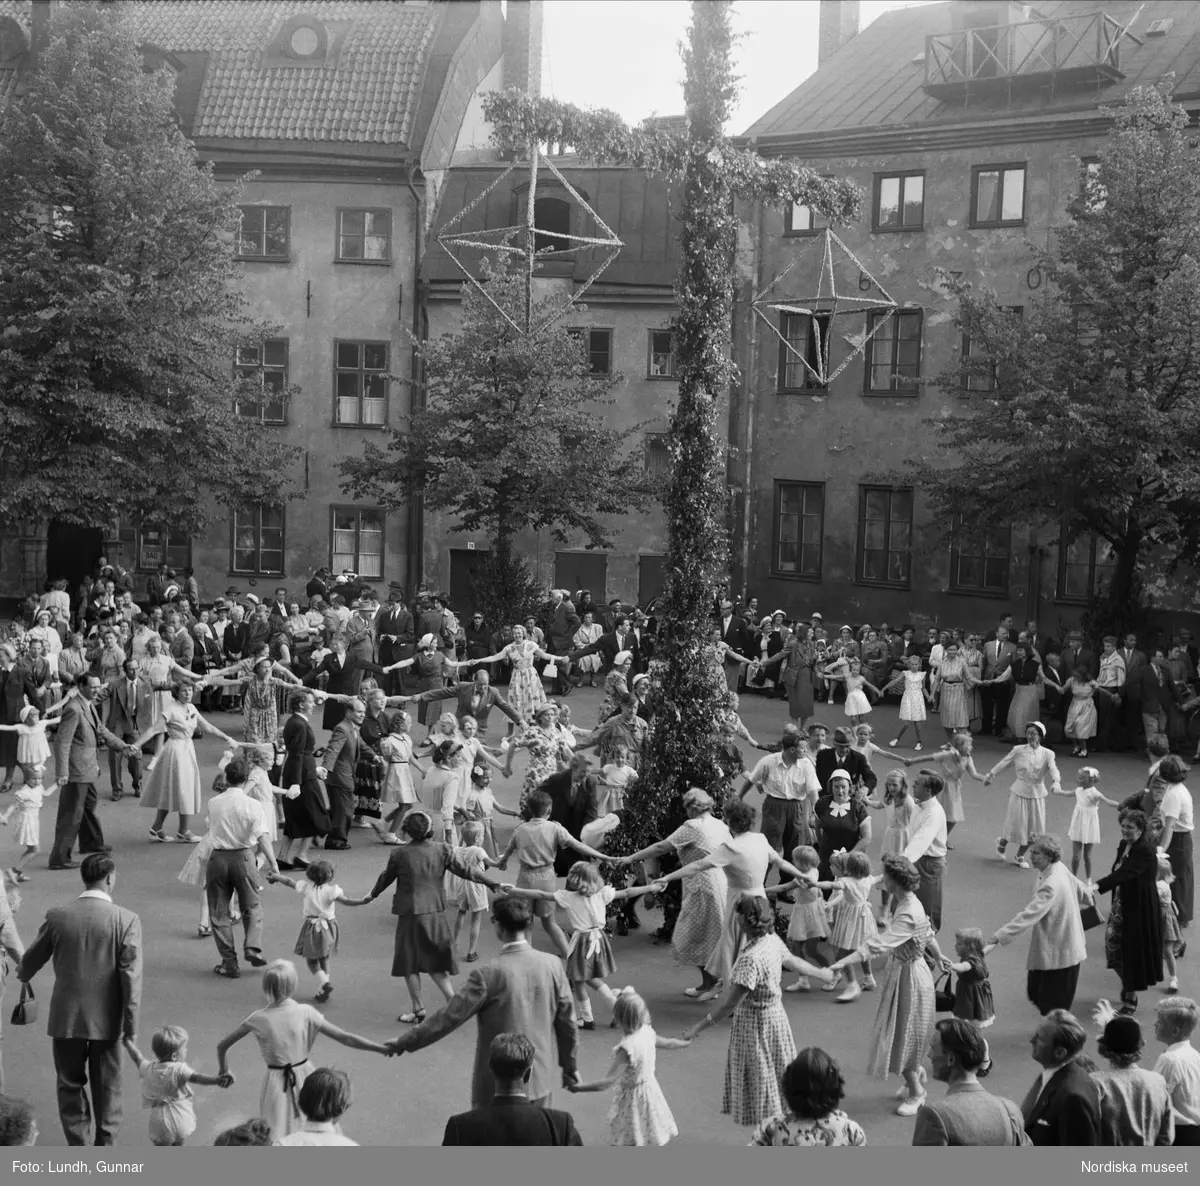 Årshögtider. Midsommar. Midsommar i Gamla stan, Stockholm. Människor dansar runt en midsommarstång på en innergård. 